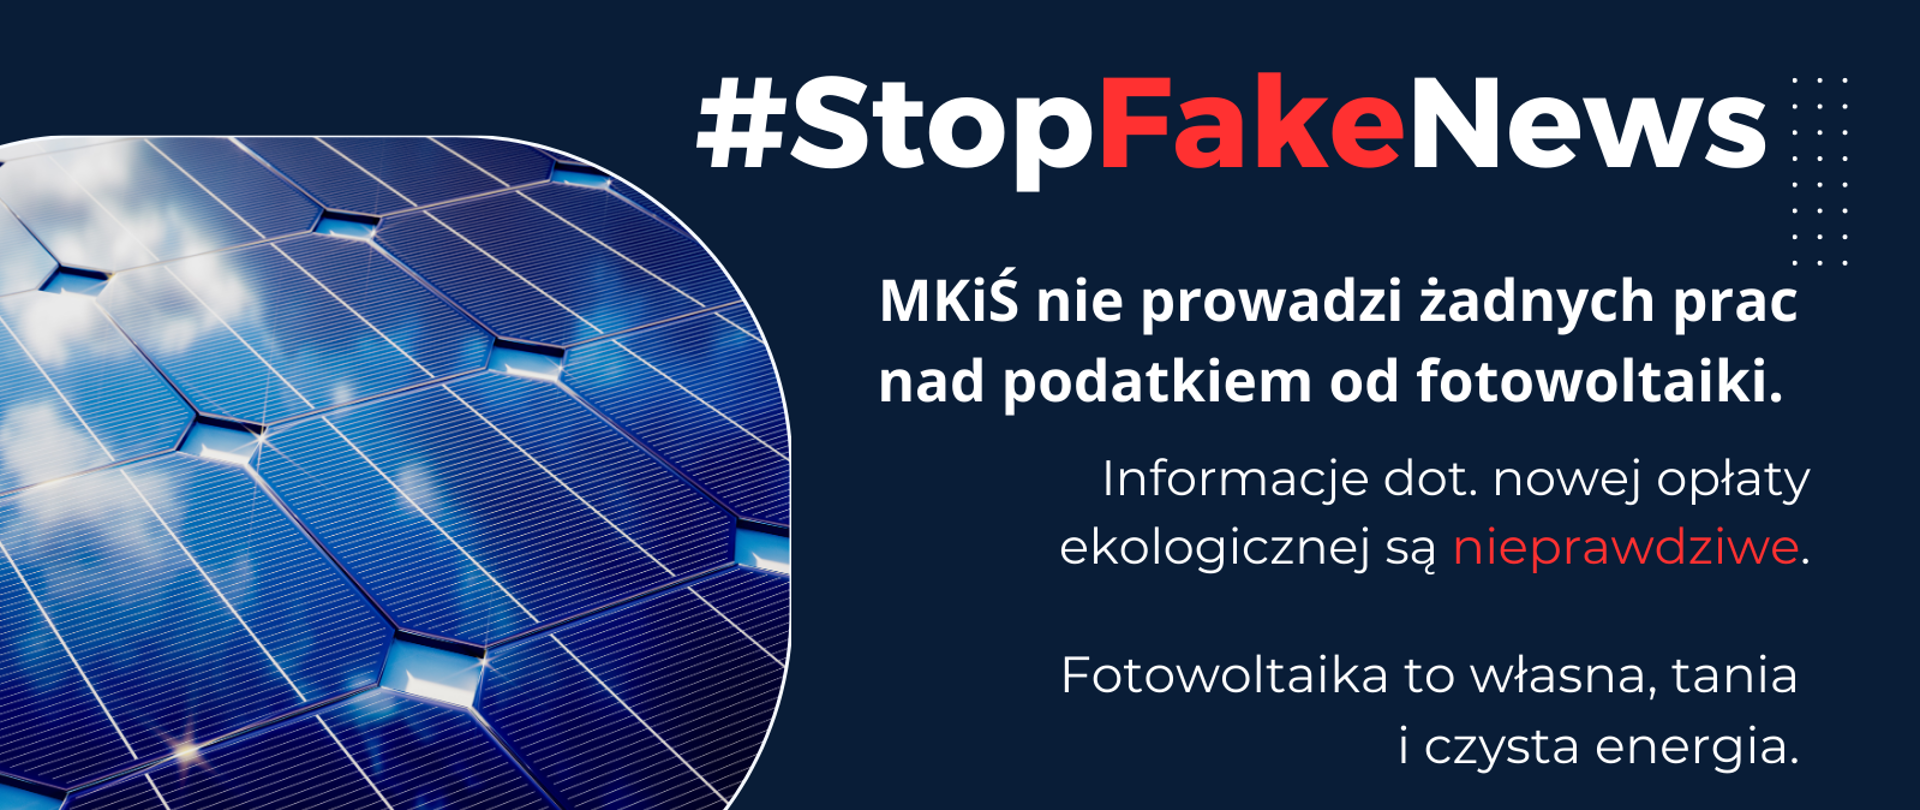 StopFakeNews - MKIŚ nie prowadzi prac nad rejestracją i opłatą ekologiczną instalacji fotowoltaicznych